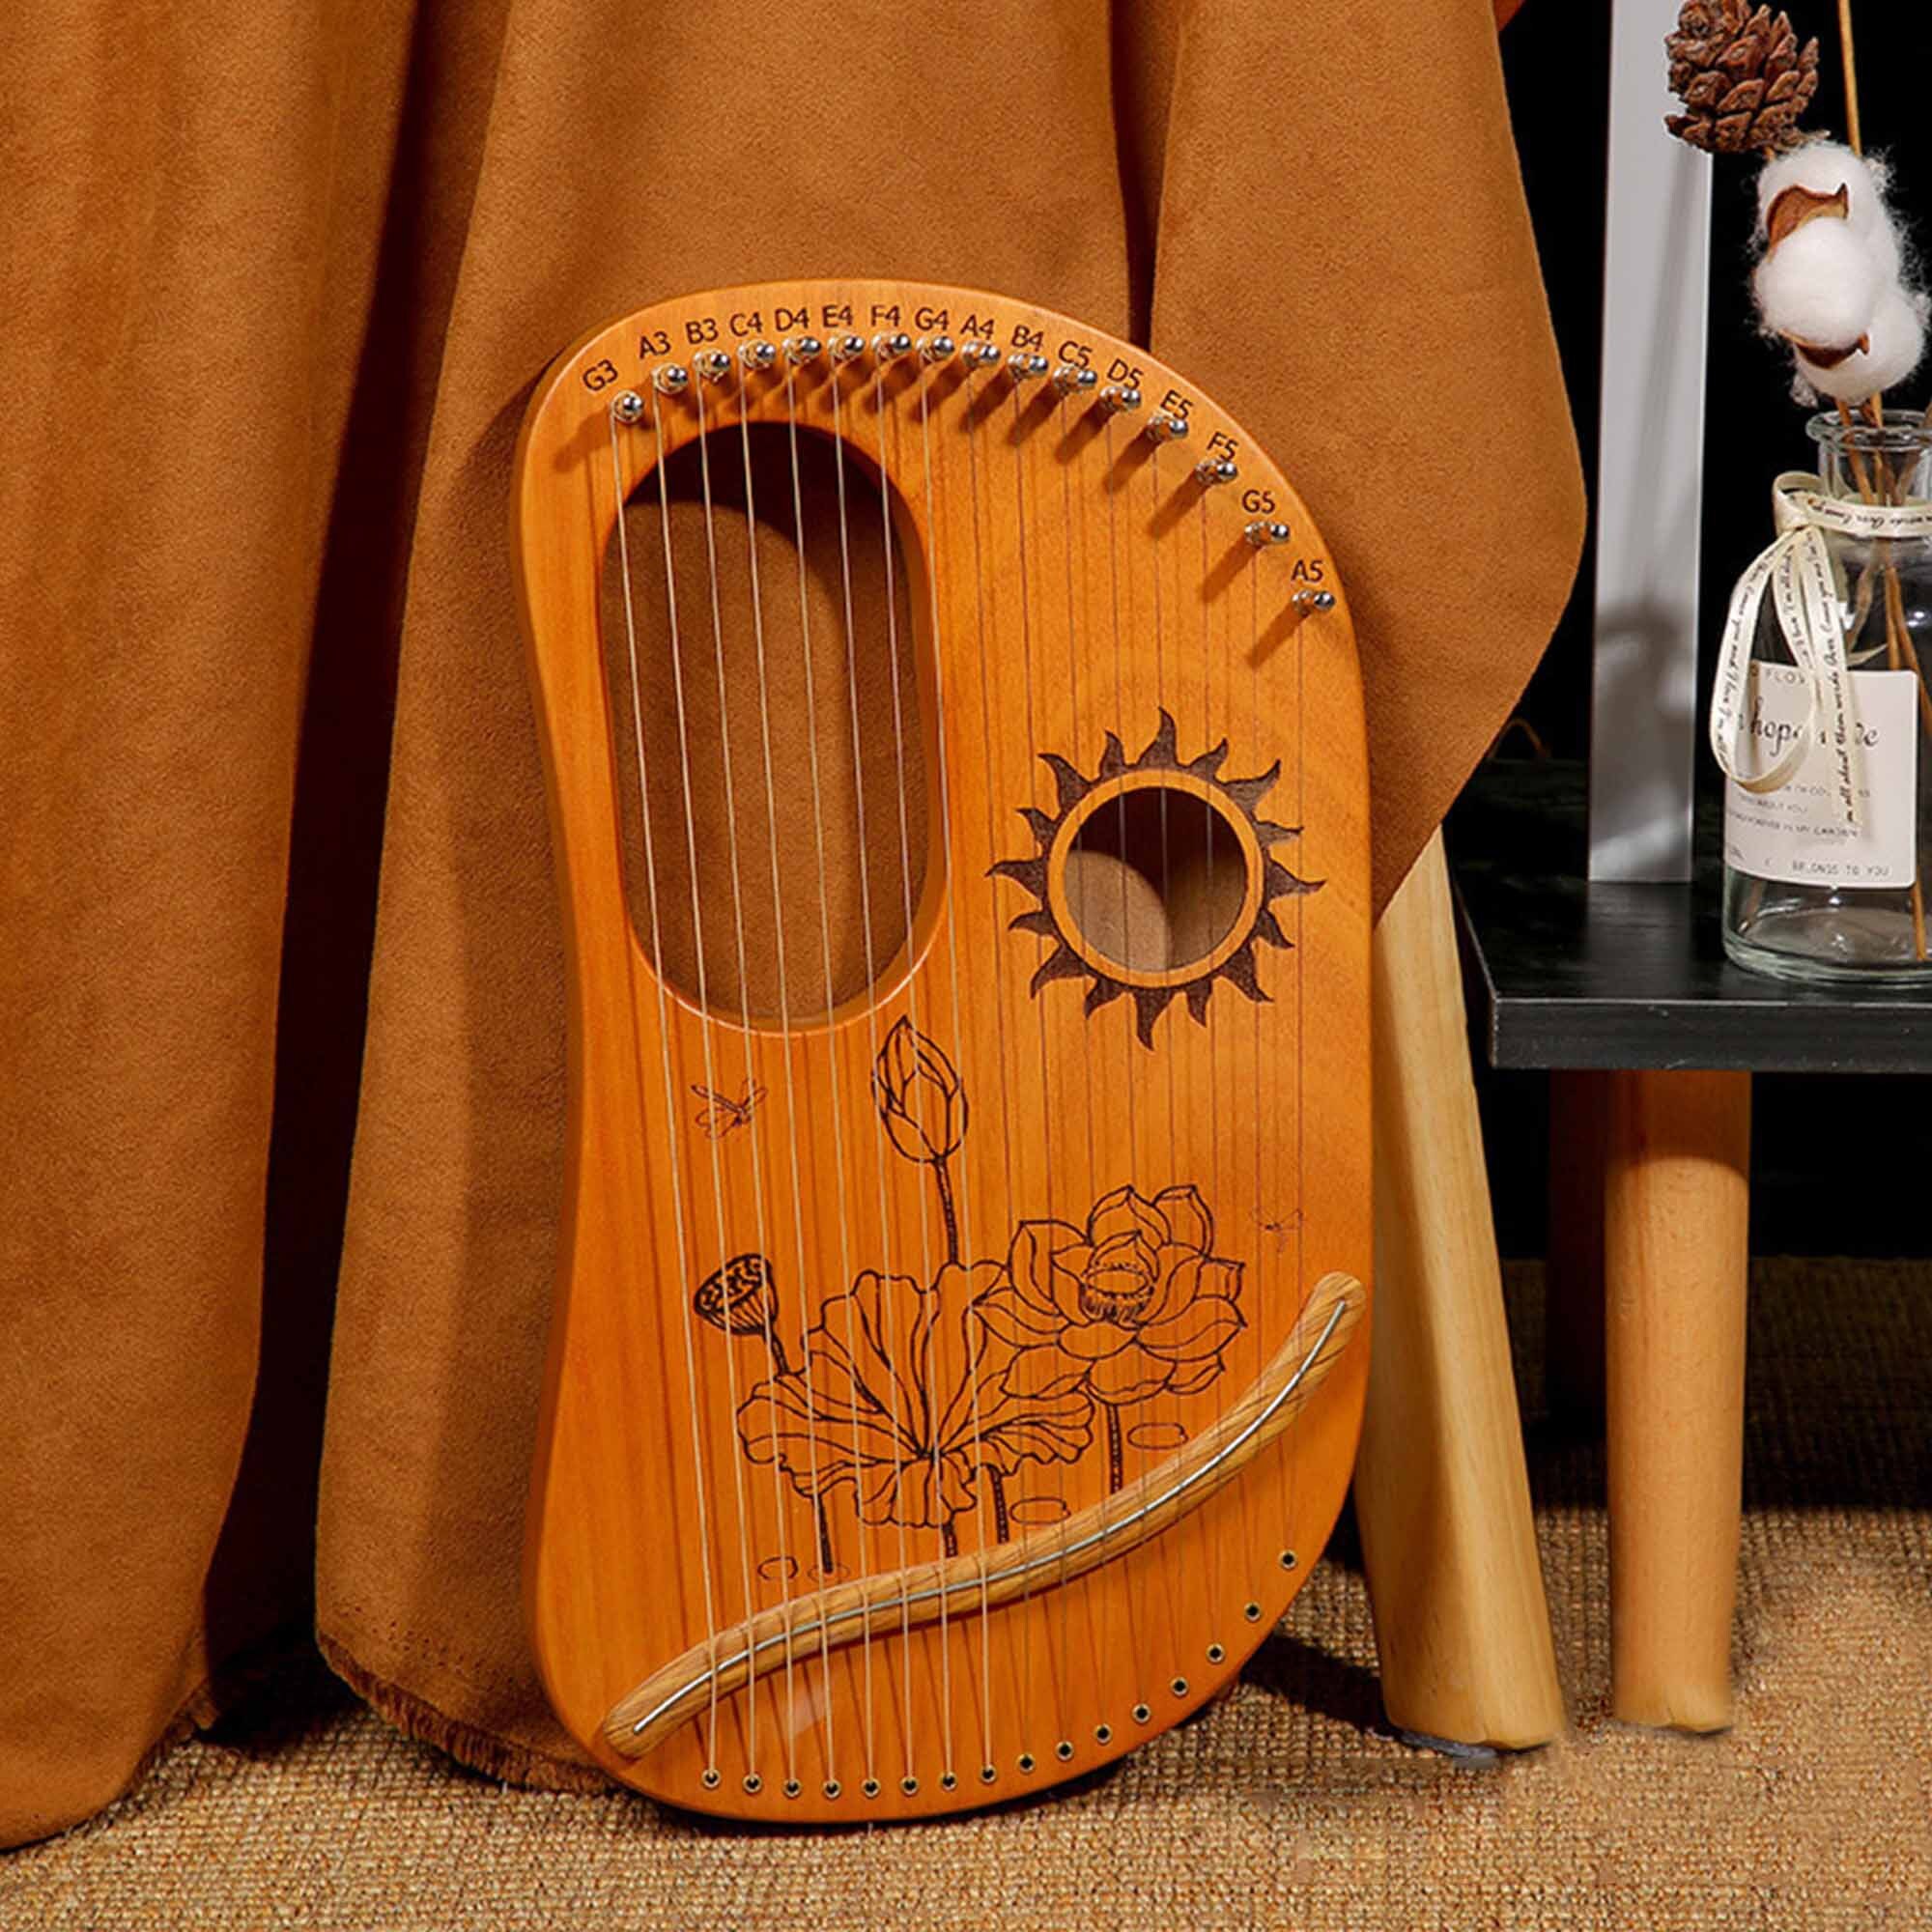 Harpe lyre 16 cordes, harpe Lotus, harpe en bois, harpe faite à la main,  petite harpe, jouer de la musique, harpe à motifs, harpe lyre décorée,  harpe lyre peinte -  France